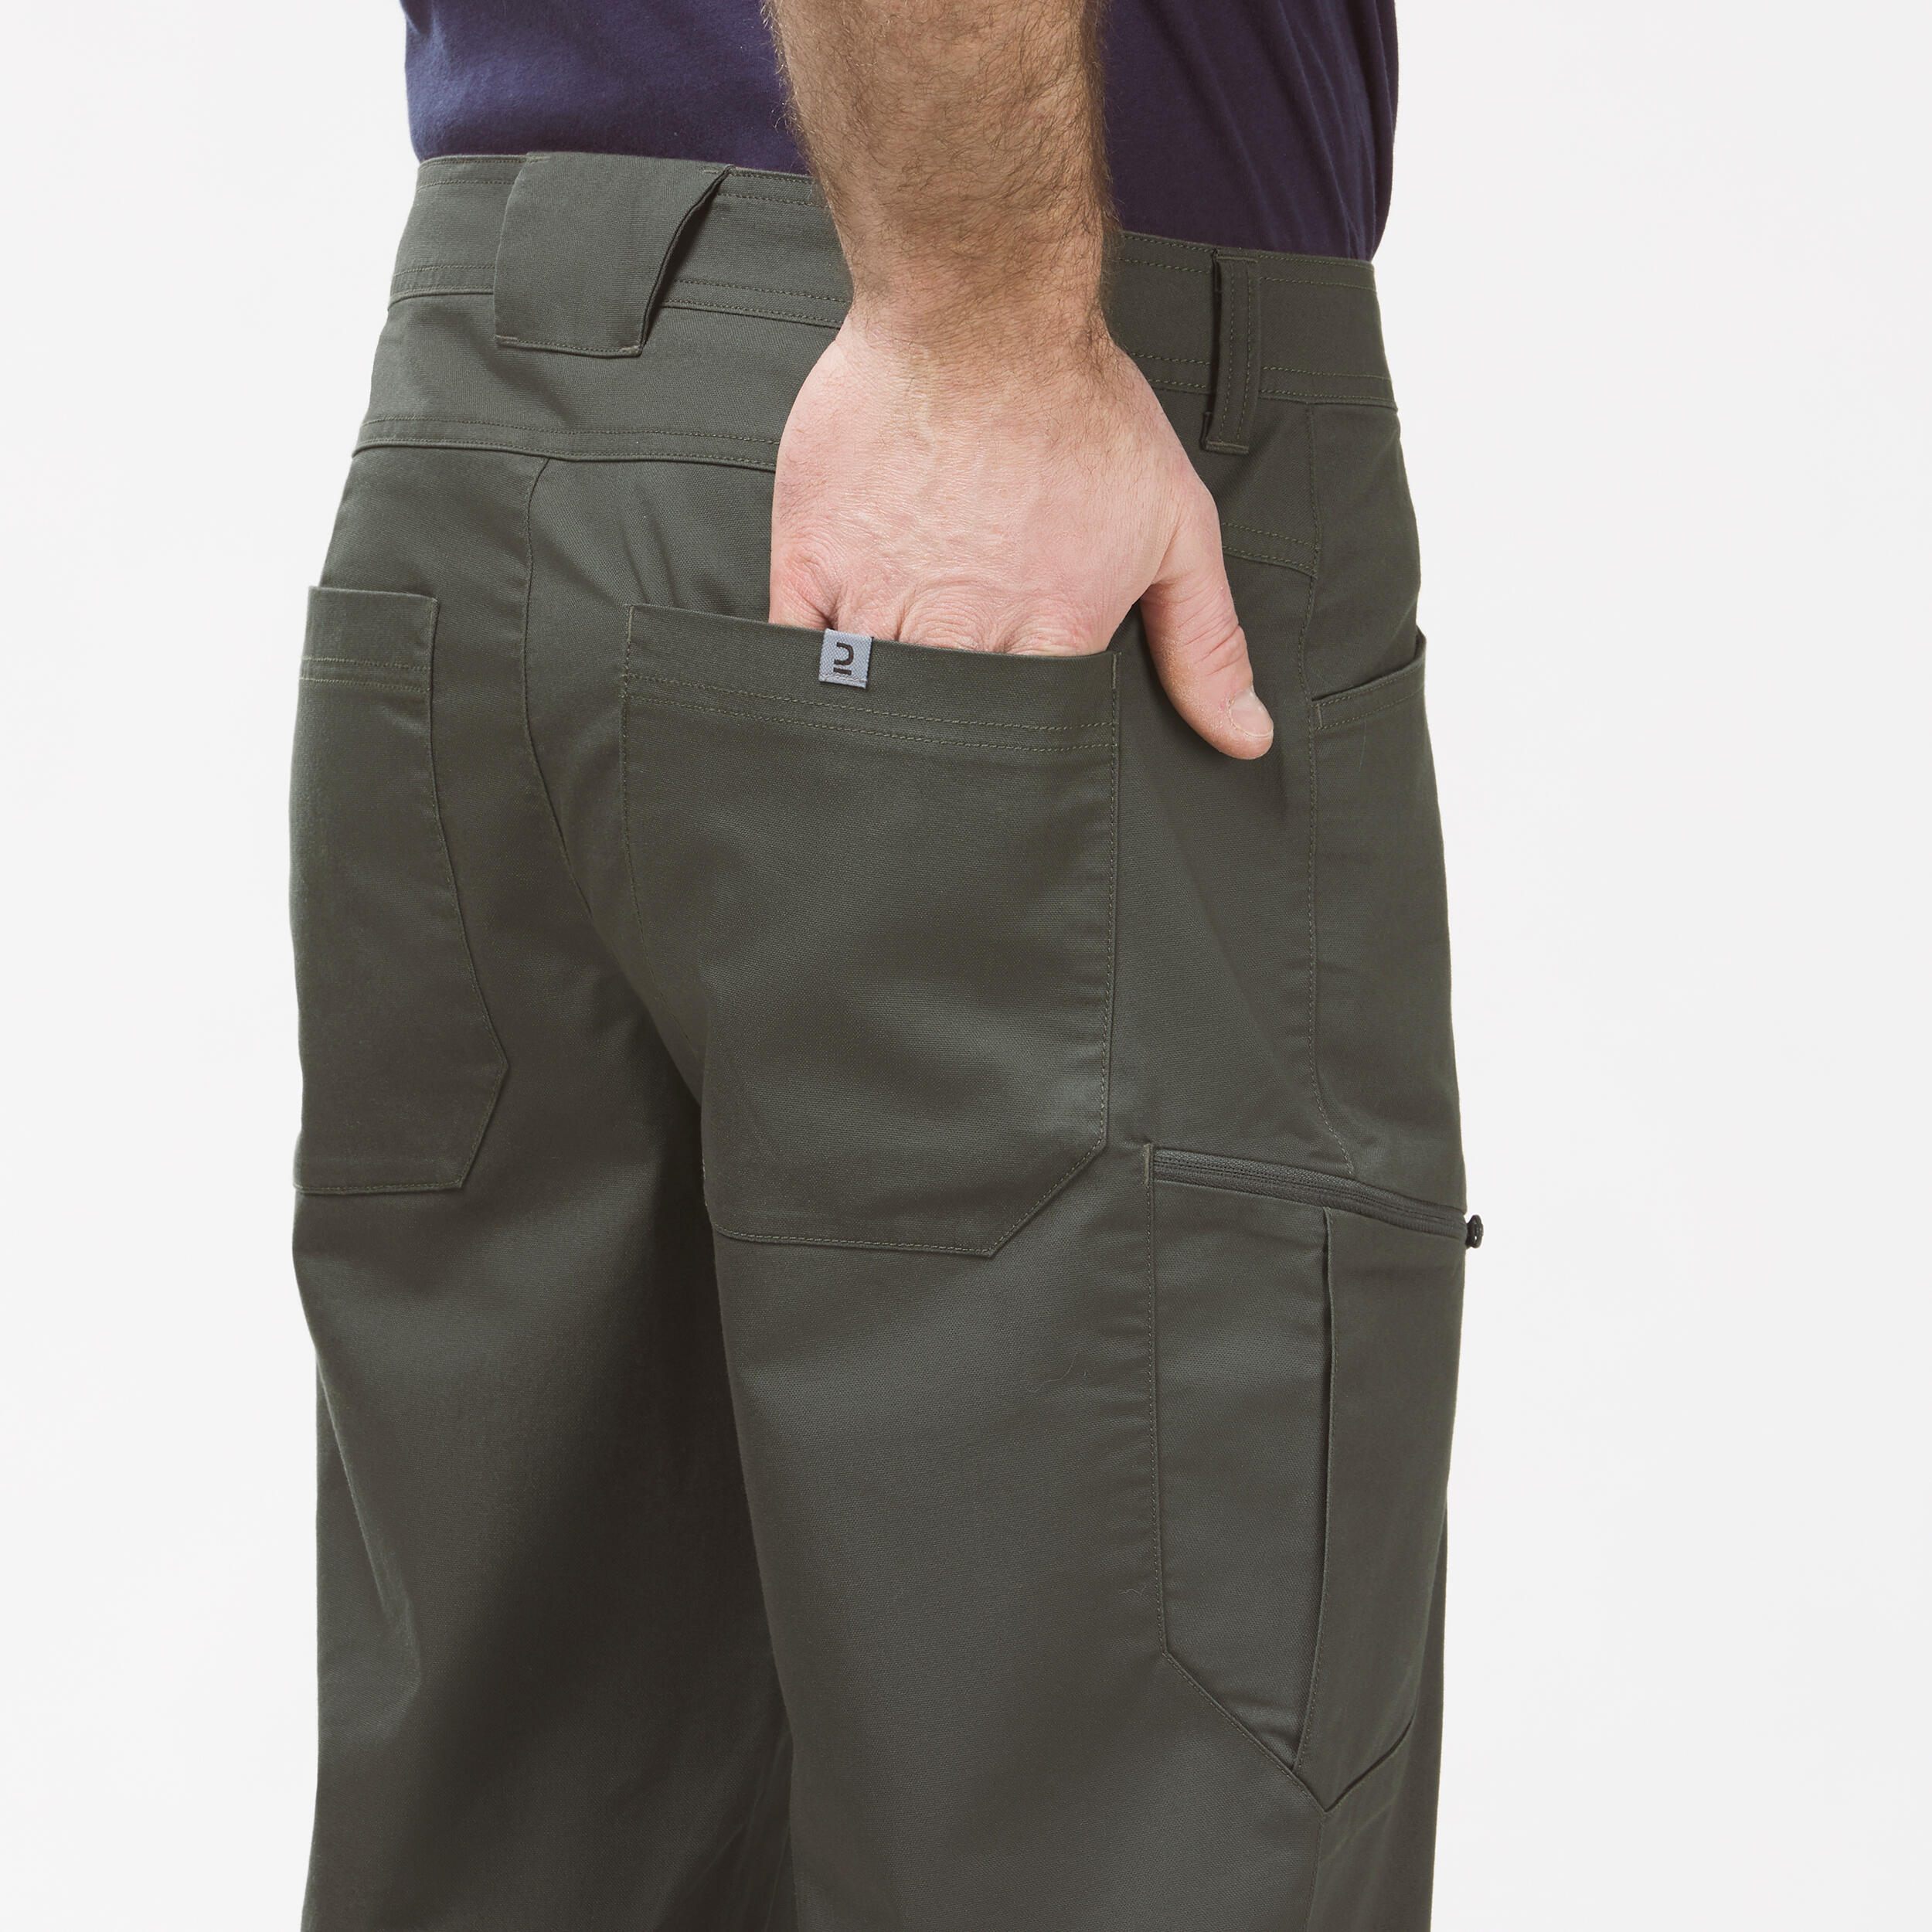 Men's NH500 Regular off-road hiking trousers 8/9